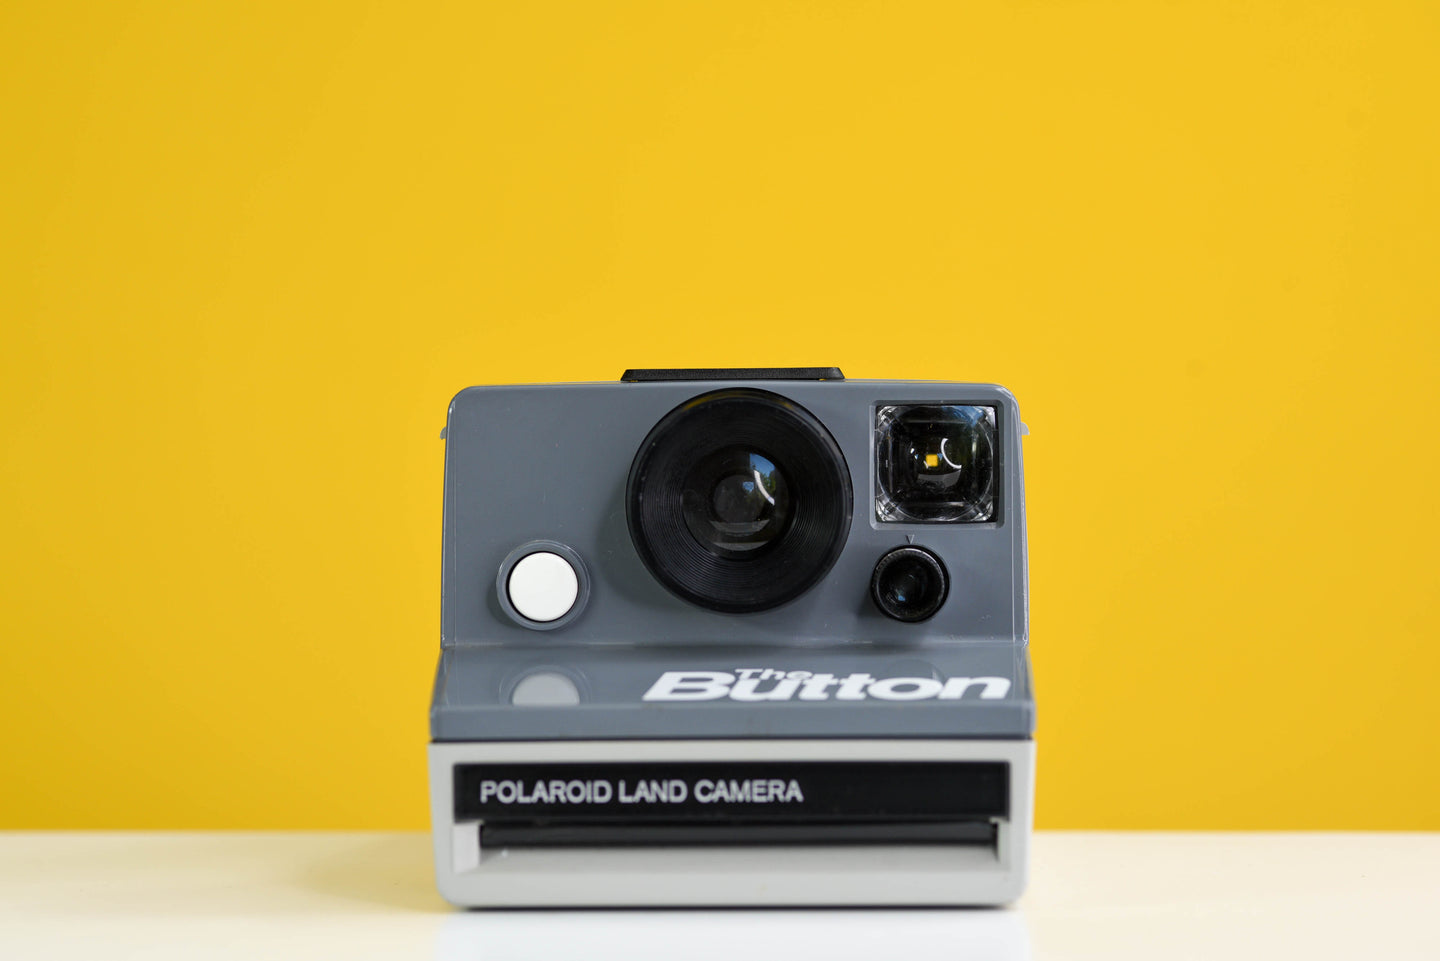 Polaroid Land Camera The Button Instant Film Camera